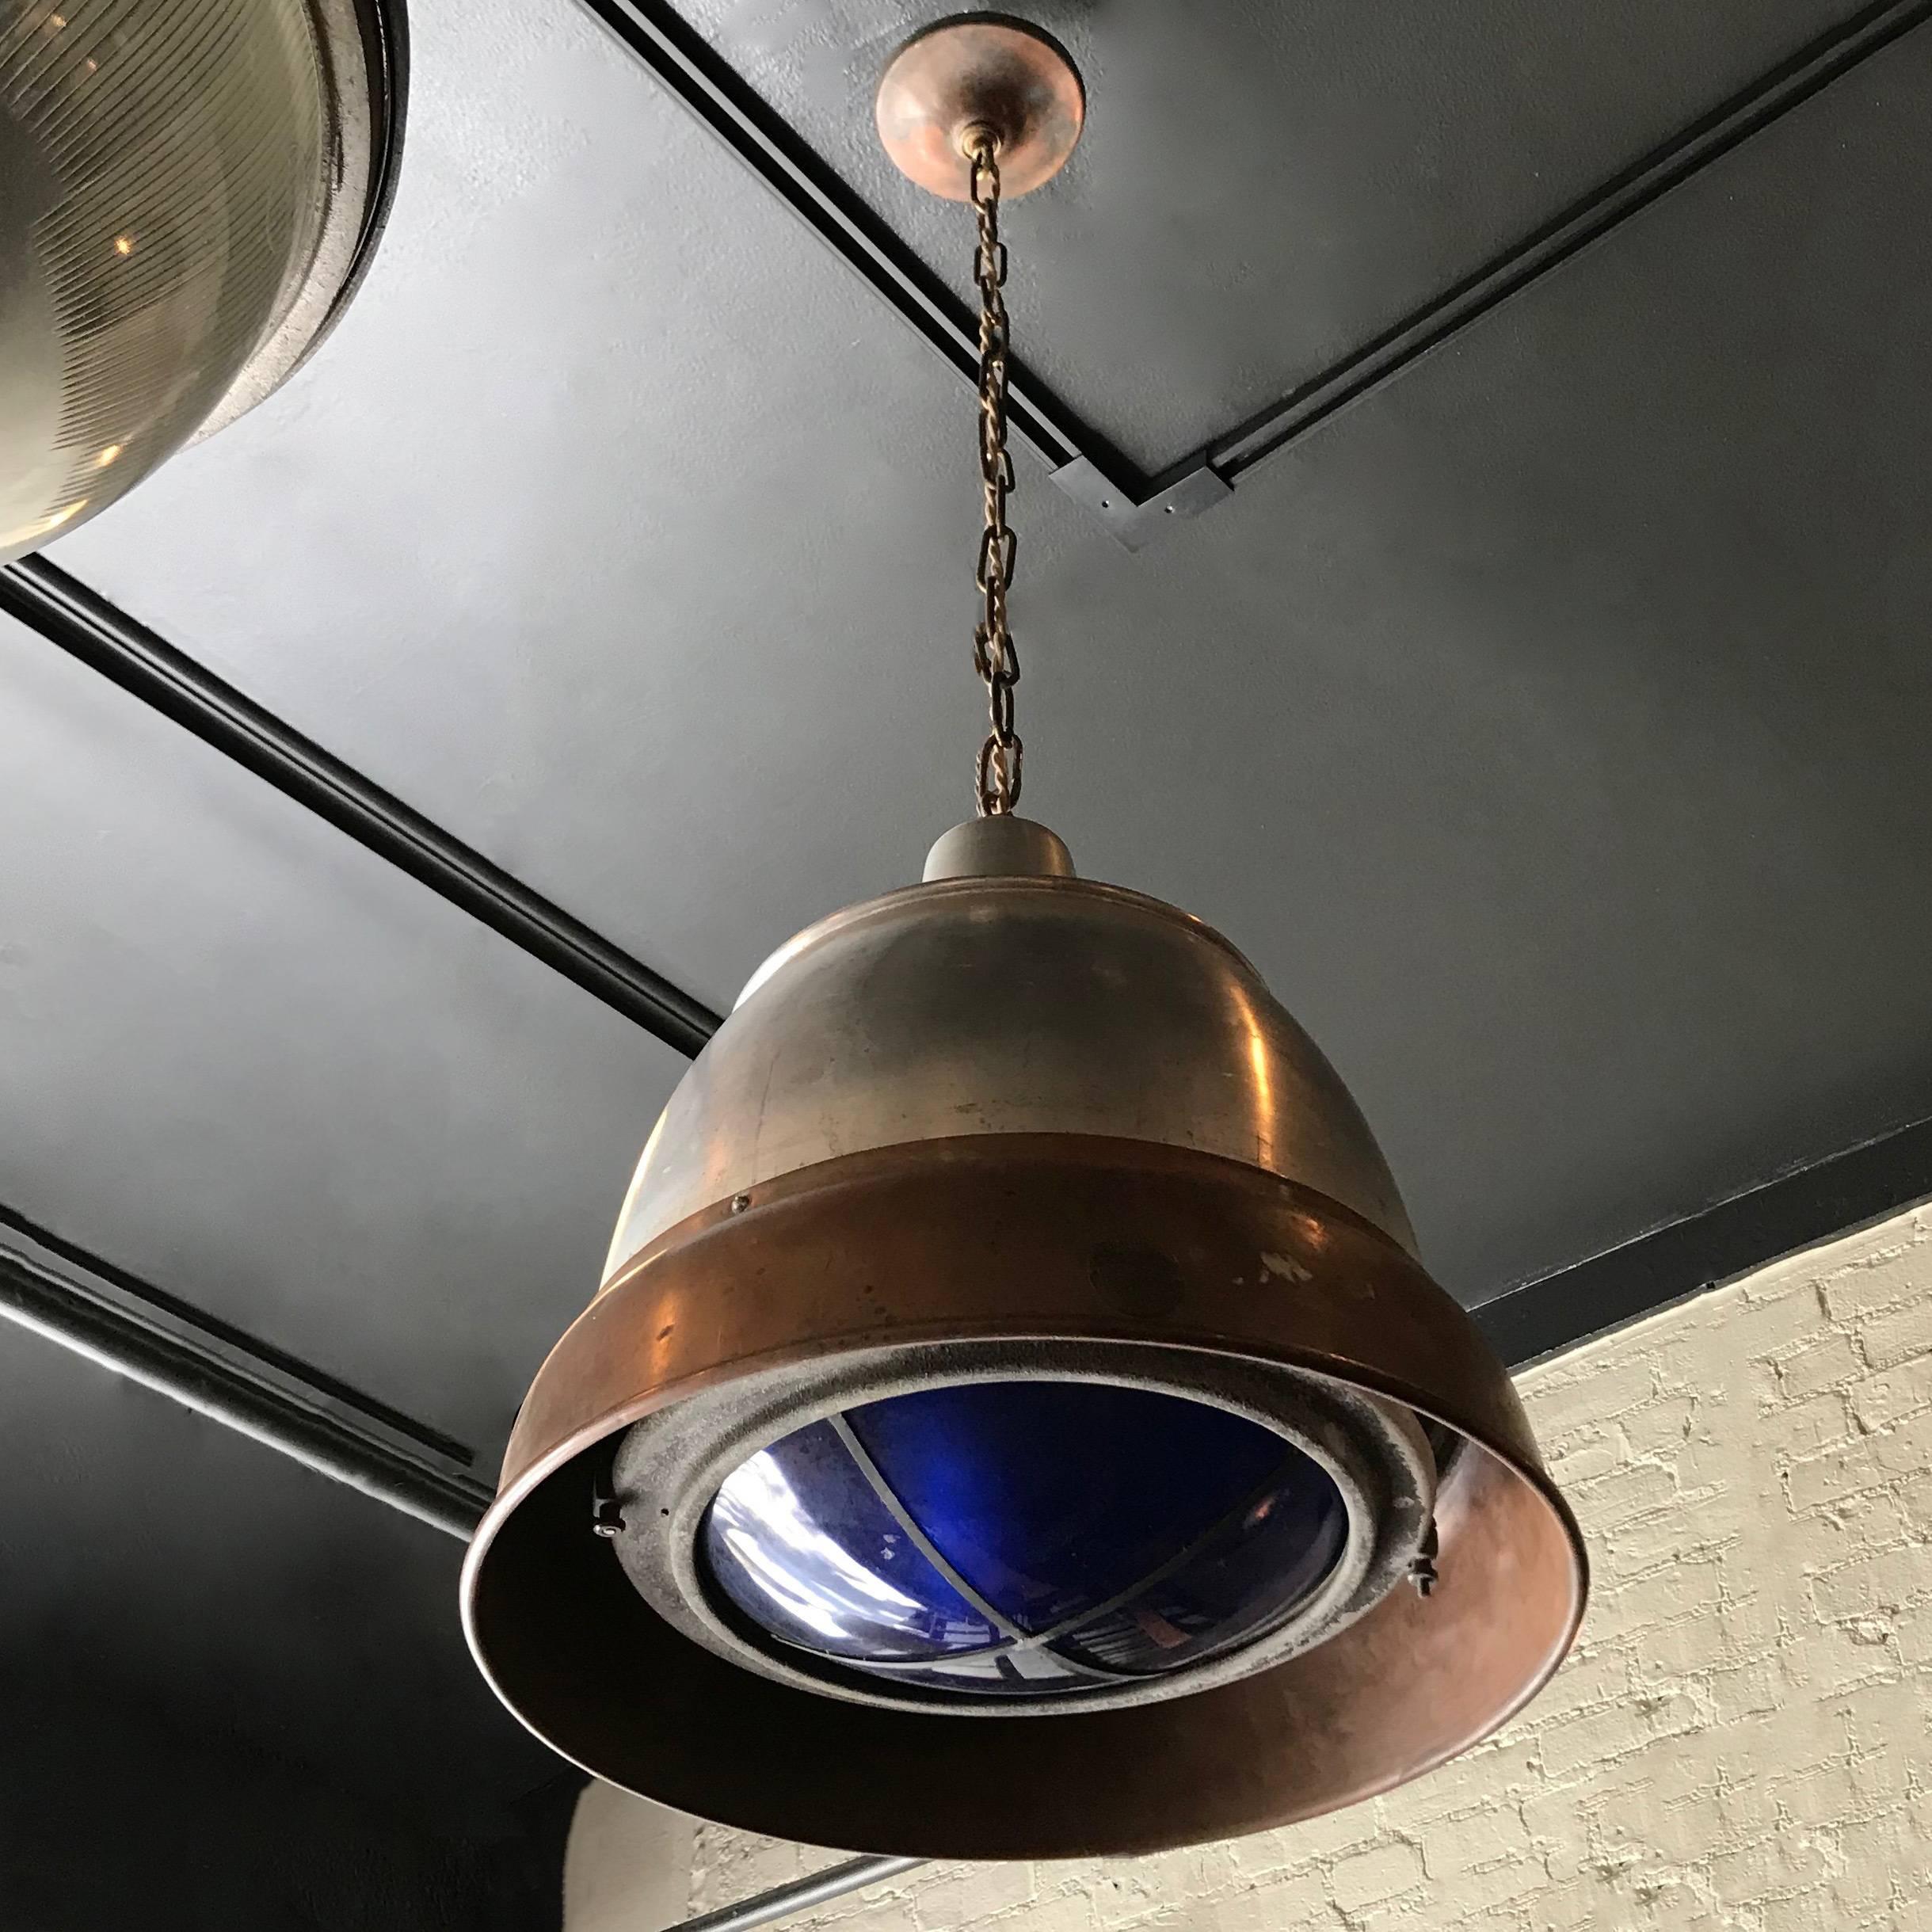 Cette grande lampe suspendue industrielle de Macbeth est dotée d'un abat-jour en forme de dôme en cuivre et en aluminium avec un filtre en verre bleu pour la correction des couleurs de la lumière du jour. Elle est suspendue à une chaîne et à un